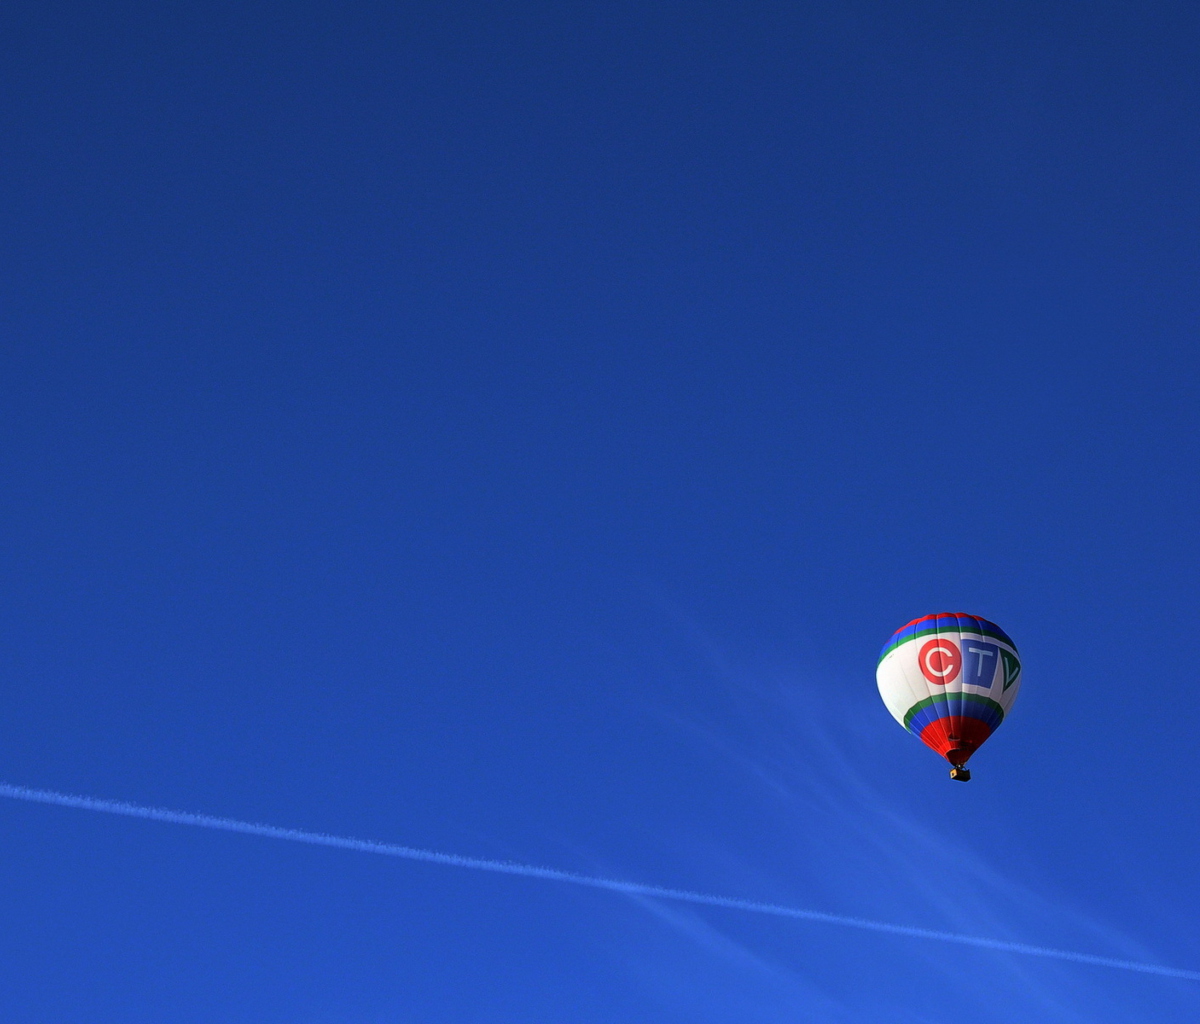 Обои Balloon In Blue Sky 1200x1024